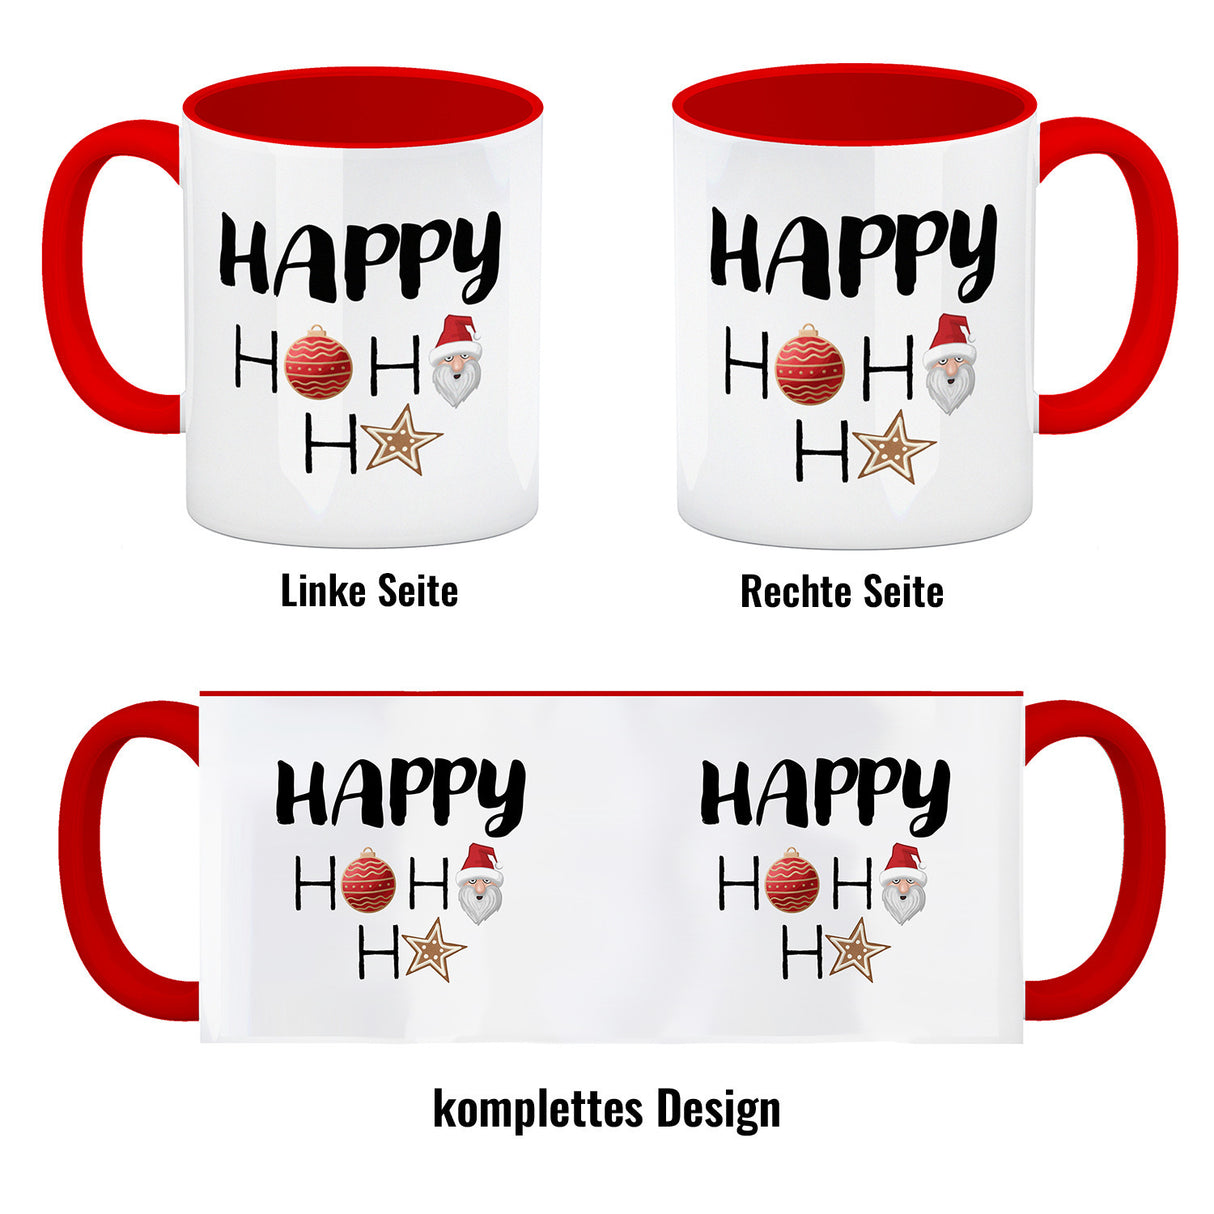 Happy HoHoHo Weihnachtsspruch Kaffeebecher